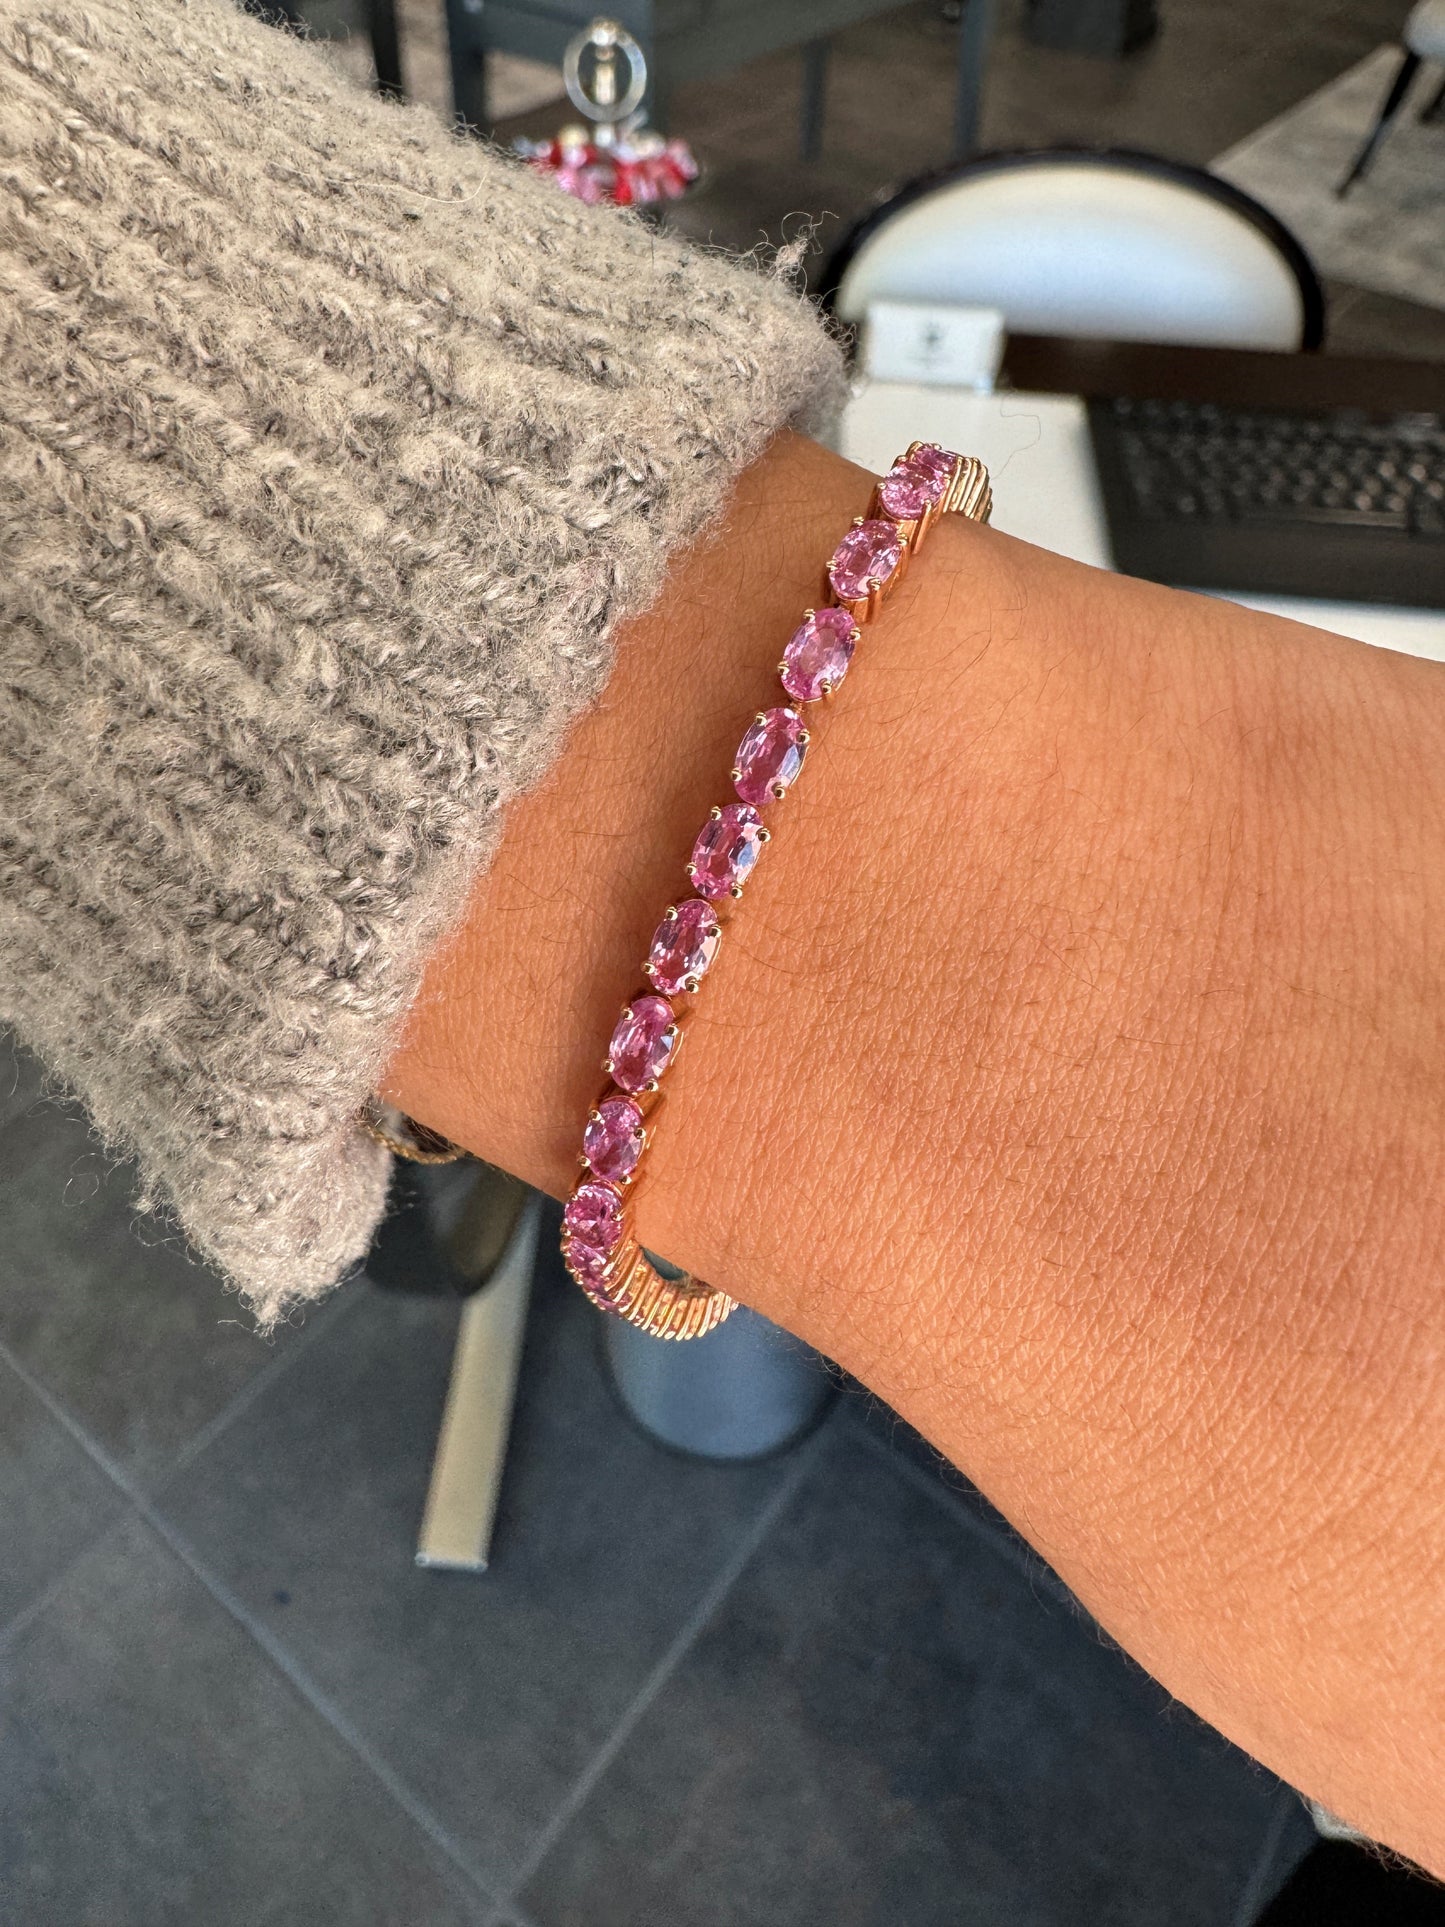 Oval Pink Sapphire Bracelet